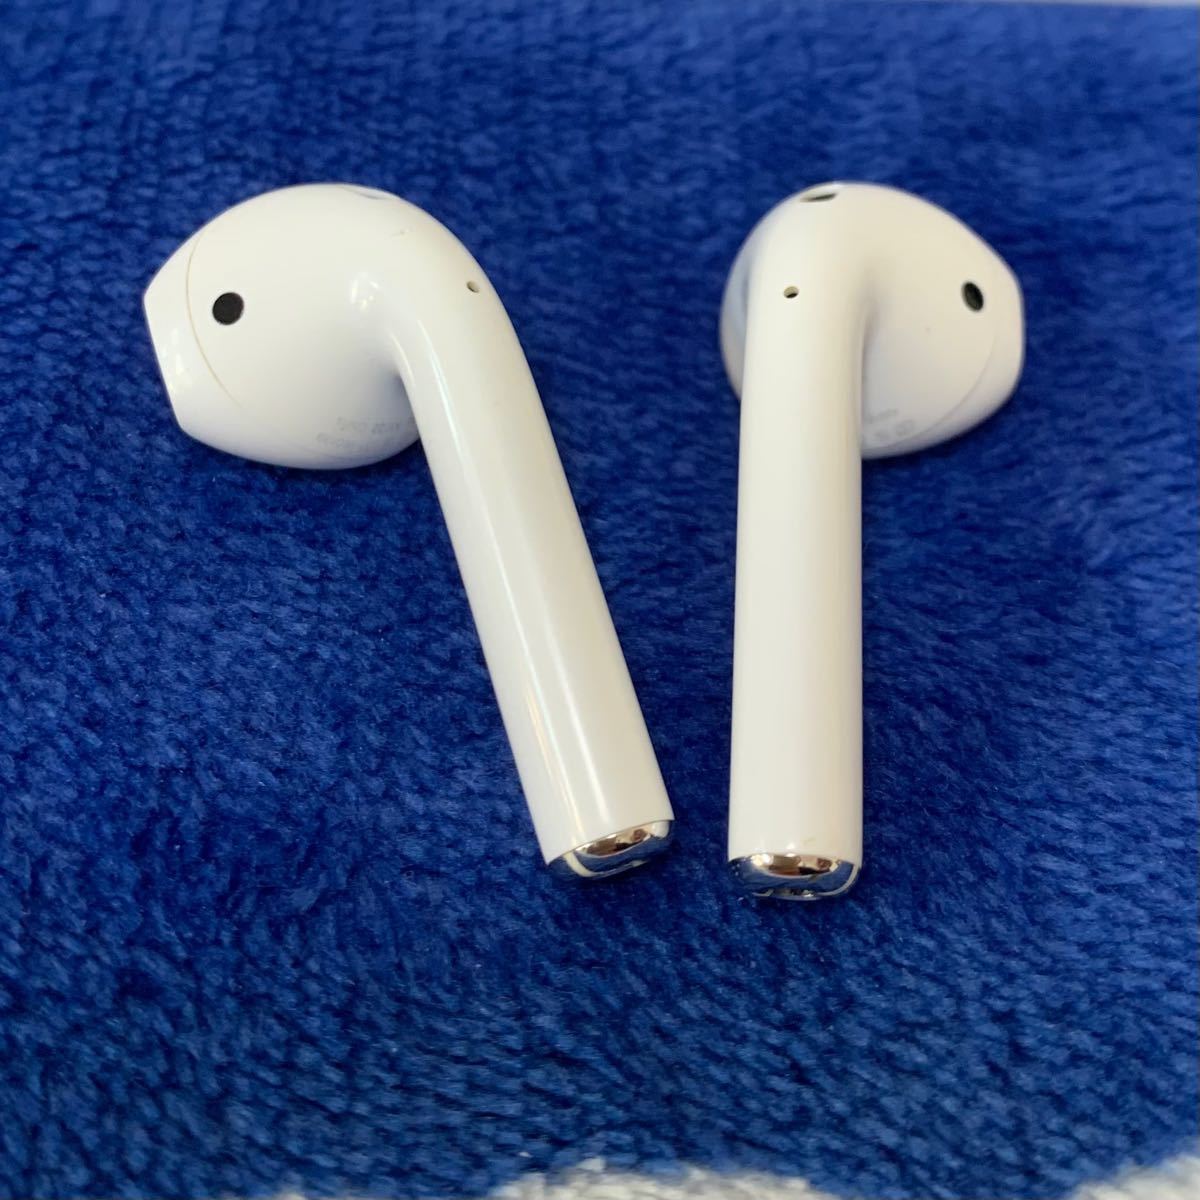 Apple 正規品 AirPods第2世代 両耳のみ ワイヤレスイヤホン